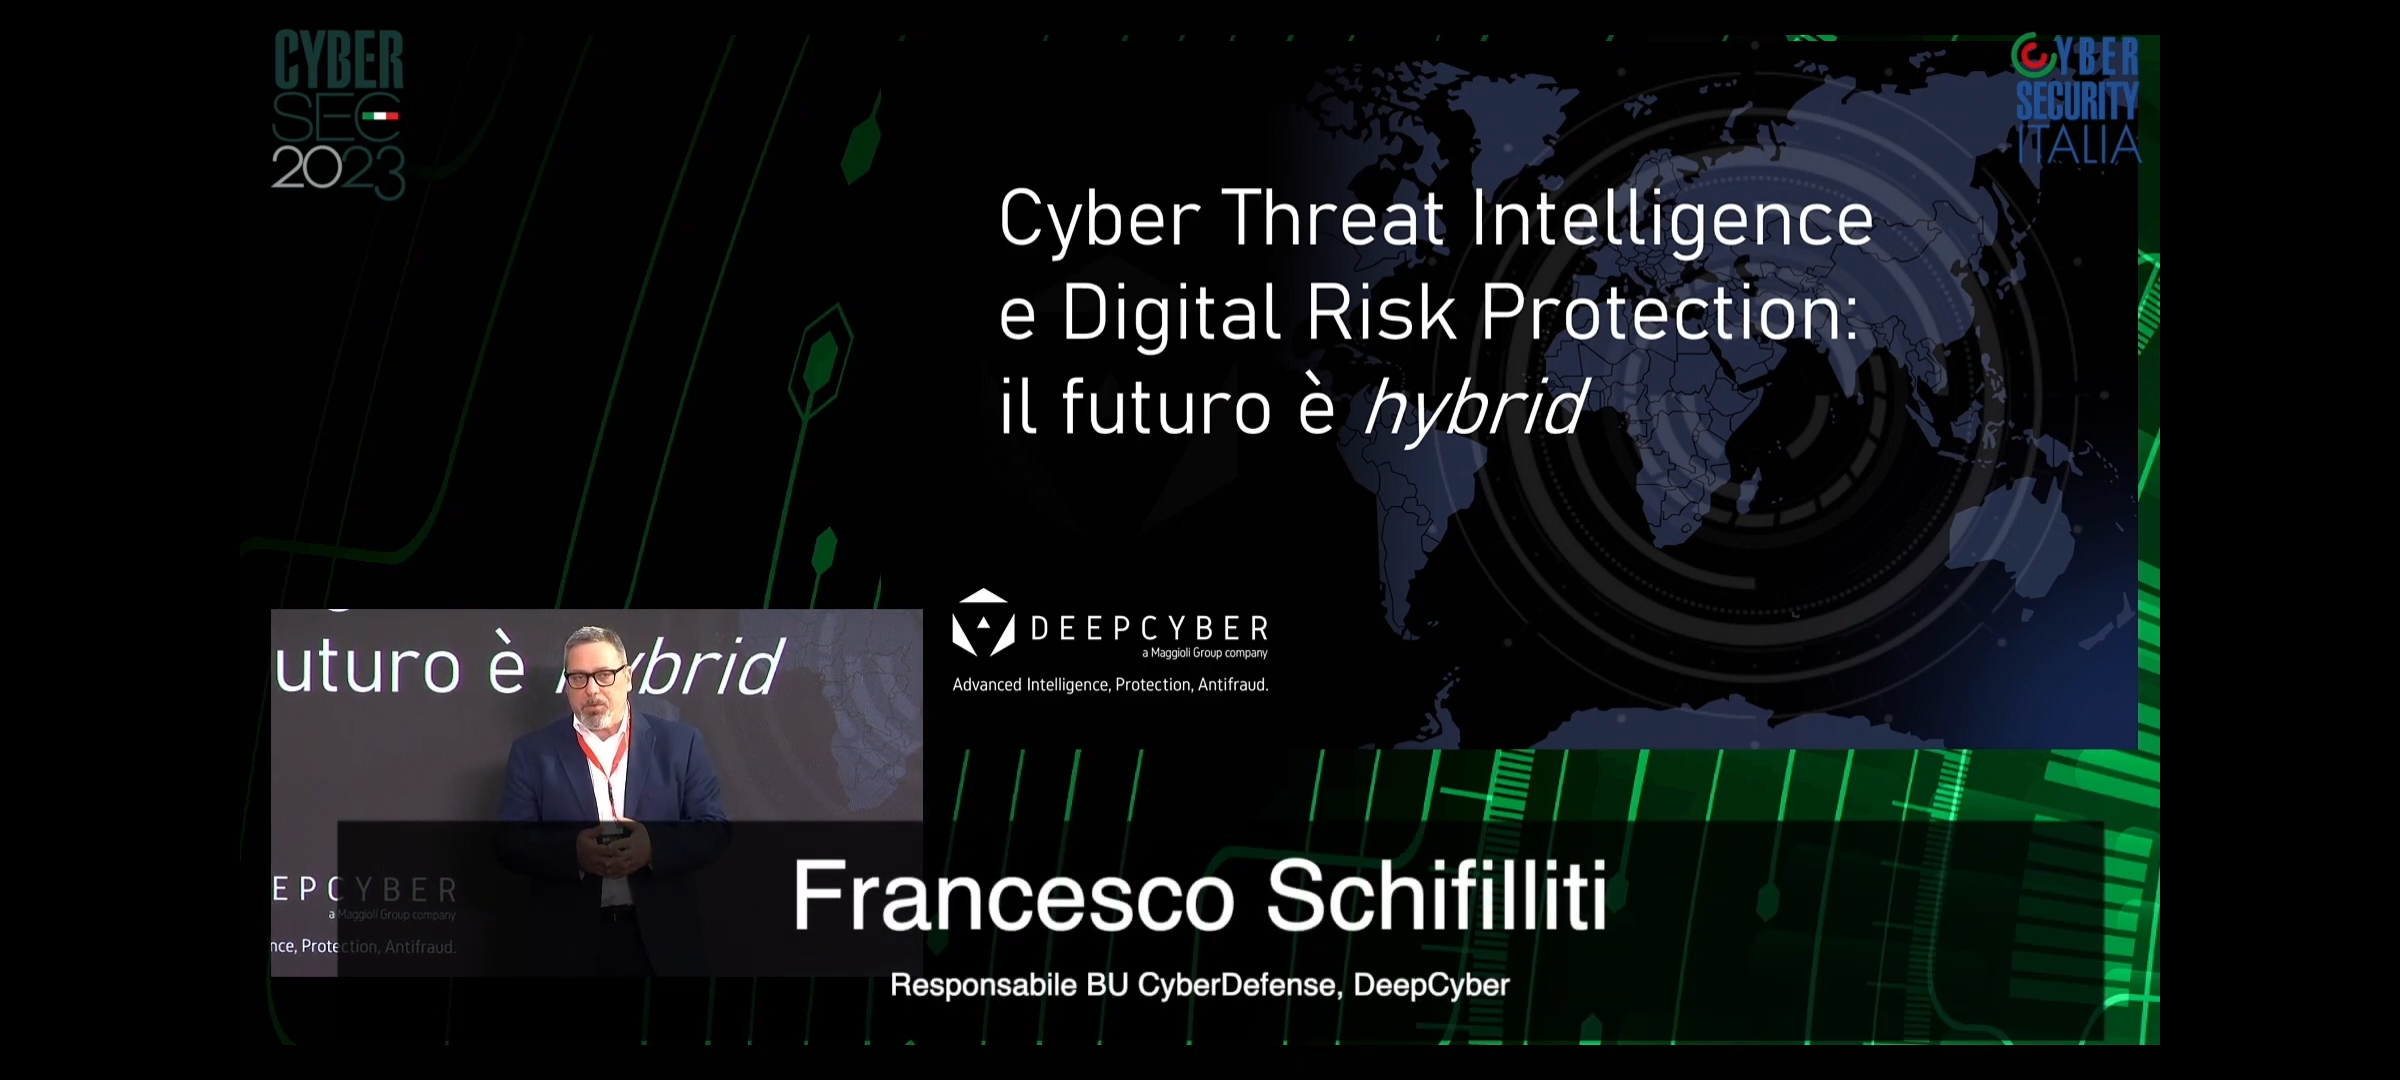  CyberSec 2023, la Conferenza Internazionale dedicata alla Cybersecurity: Gli interventi di DeepCyber